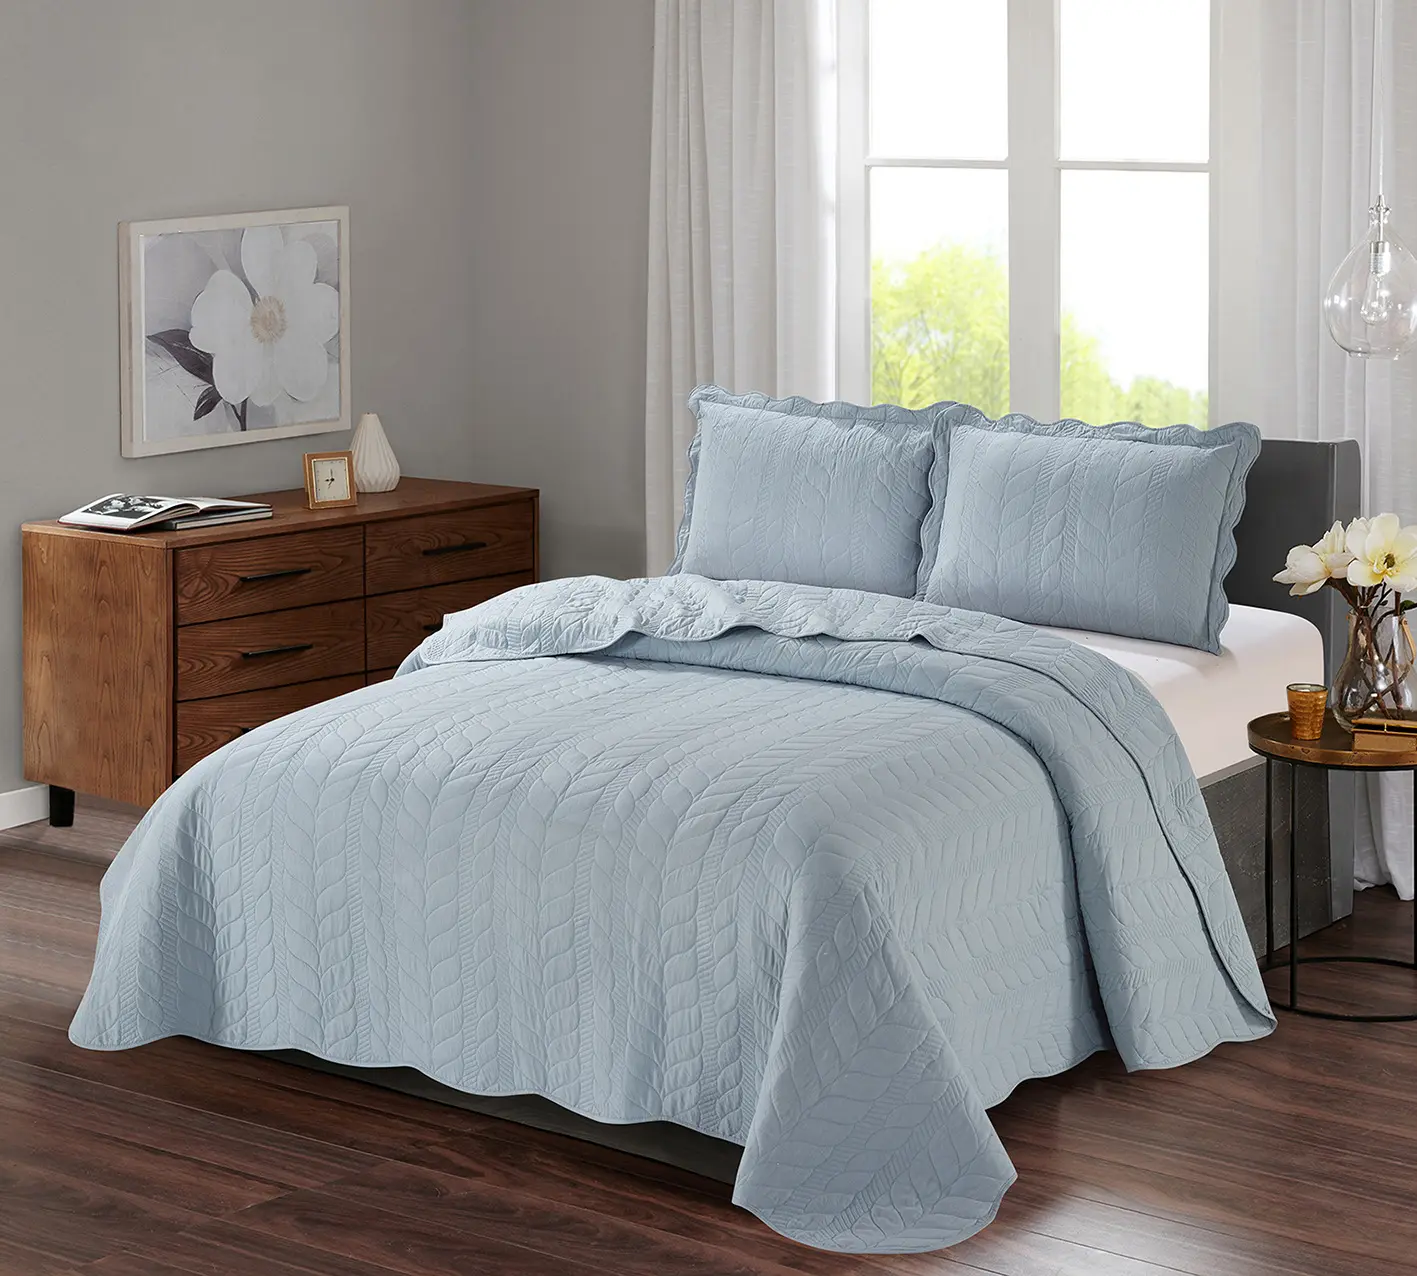 Conjunto de colcha reversível, conjunto de cama de 100% algodão reversível com todas as estações para a cama, acolchoada e pré-lavada